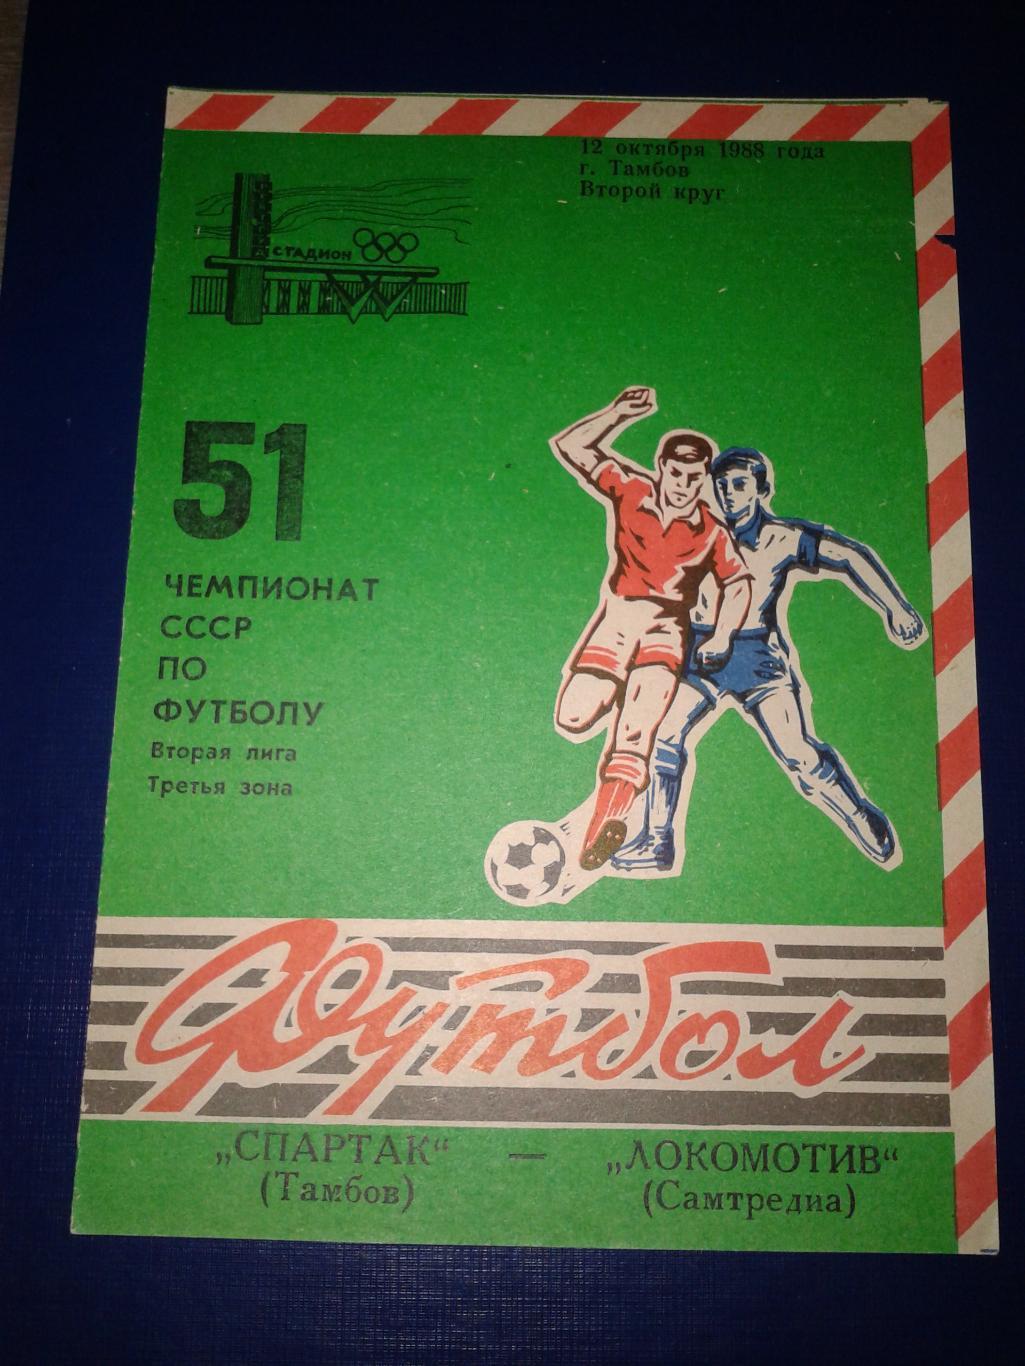 1988 Спартак Тамбов-Локомотив Самтредиа